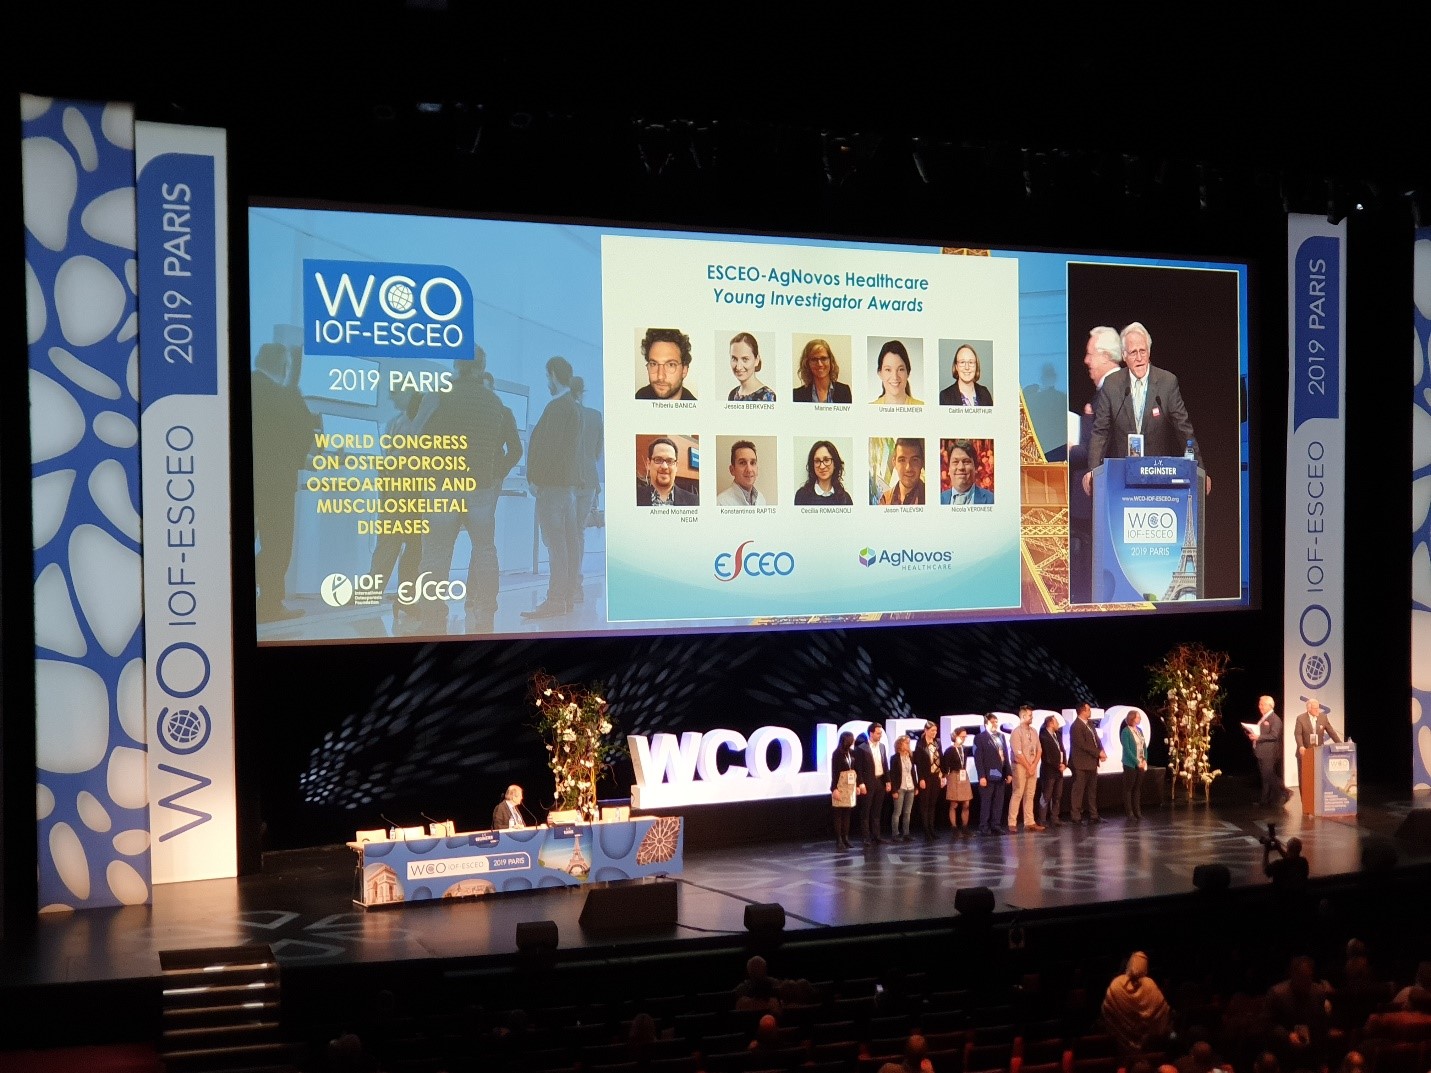 ESCEO-AgNovos Healthcare - Young Investigator Awards verliehen auf dem WCO-IOF-ESCEO-Kongress 2019